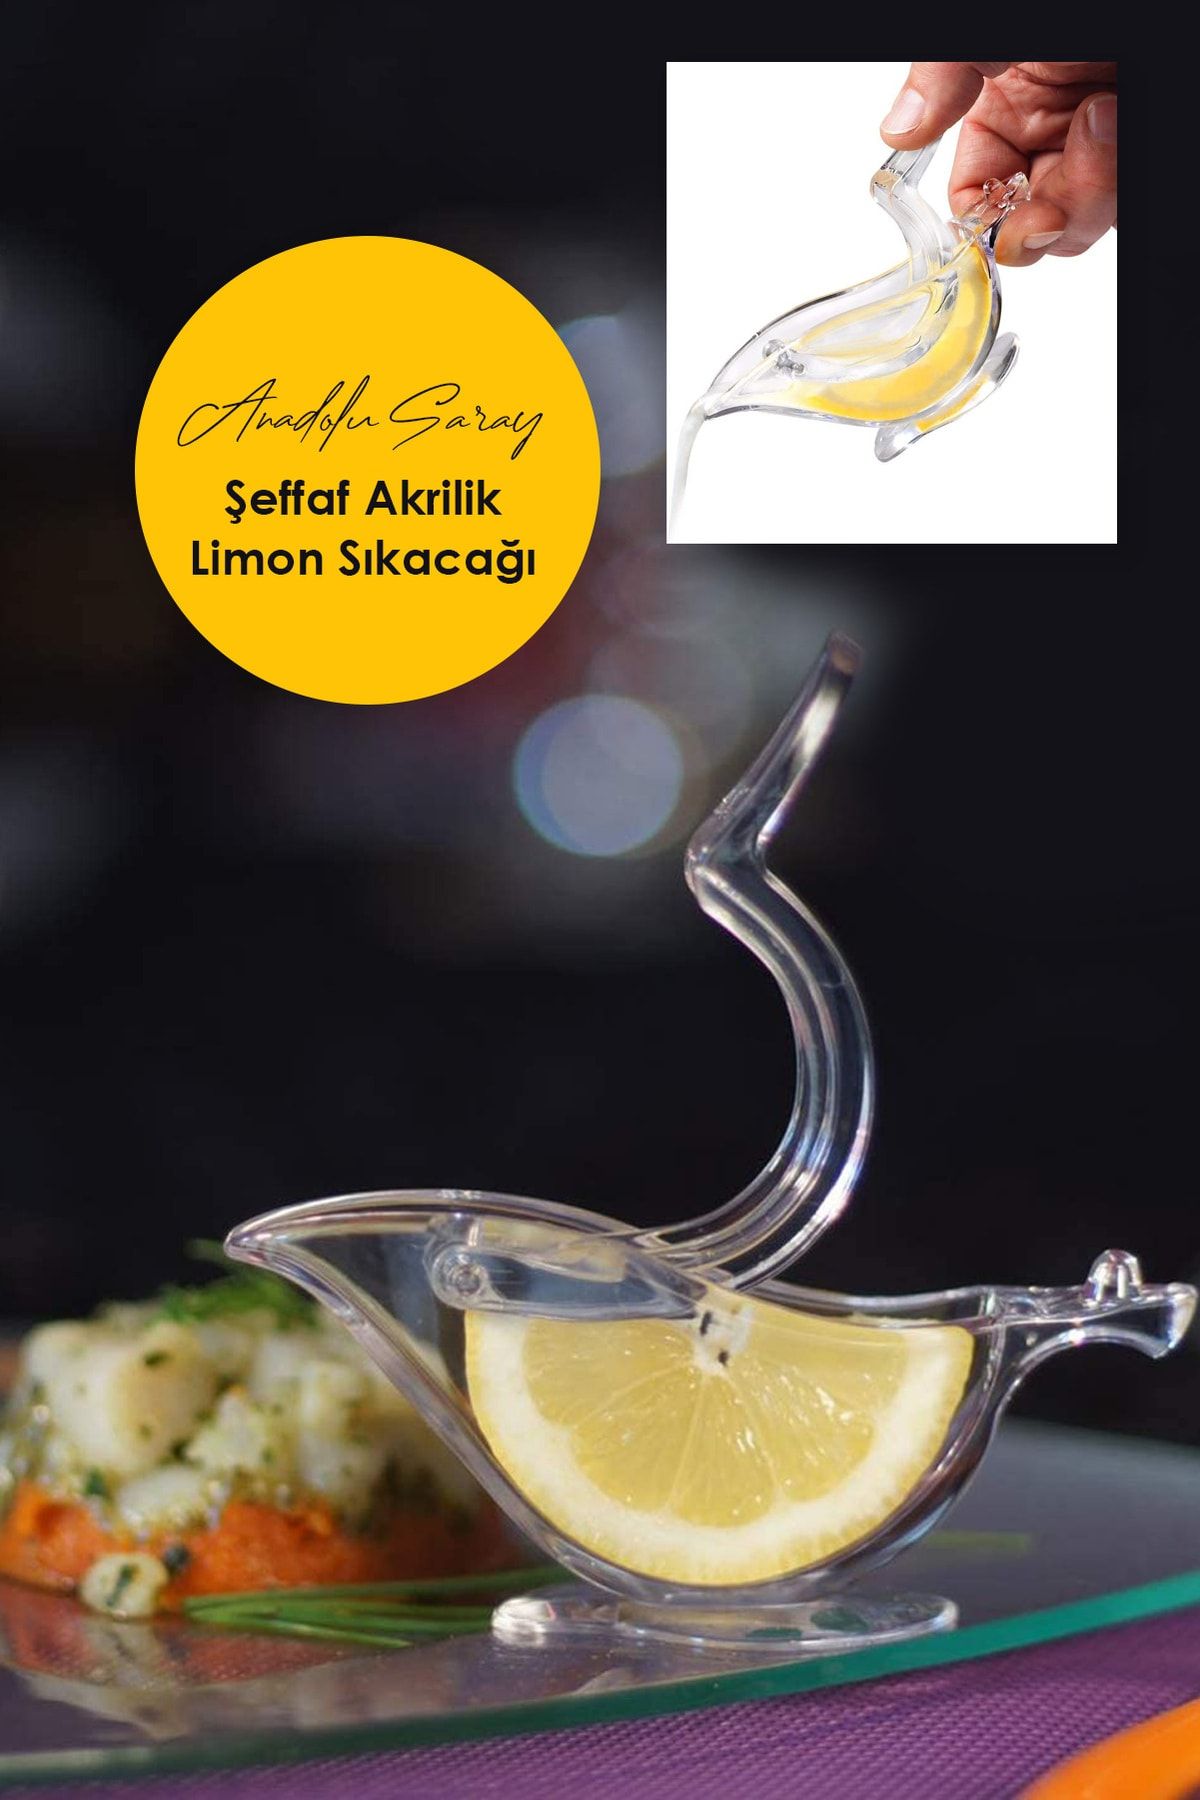 Anadolu Saray Çarşısı Pratik Lüx Dekoratif Şeffaf Akrilik Limon Sıkacağı - 1 Adet